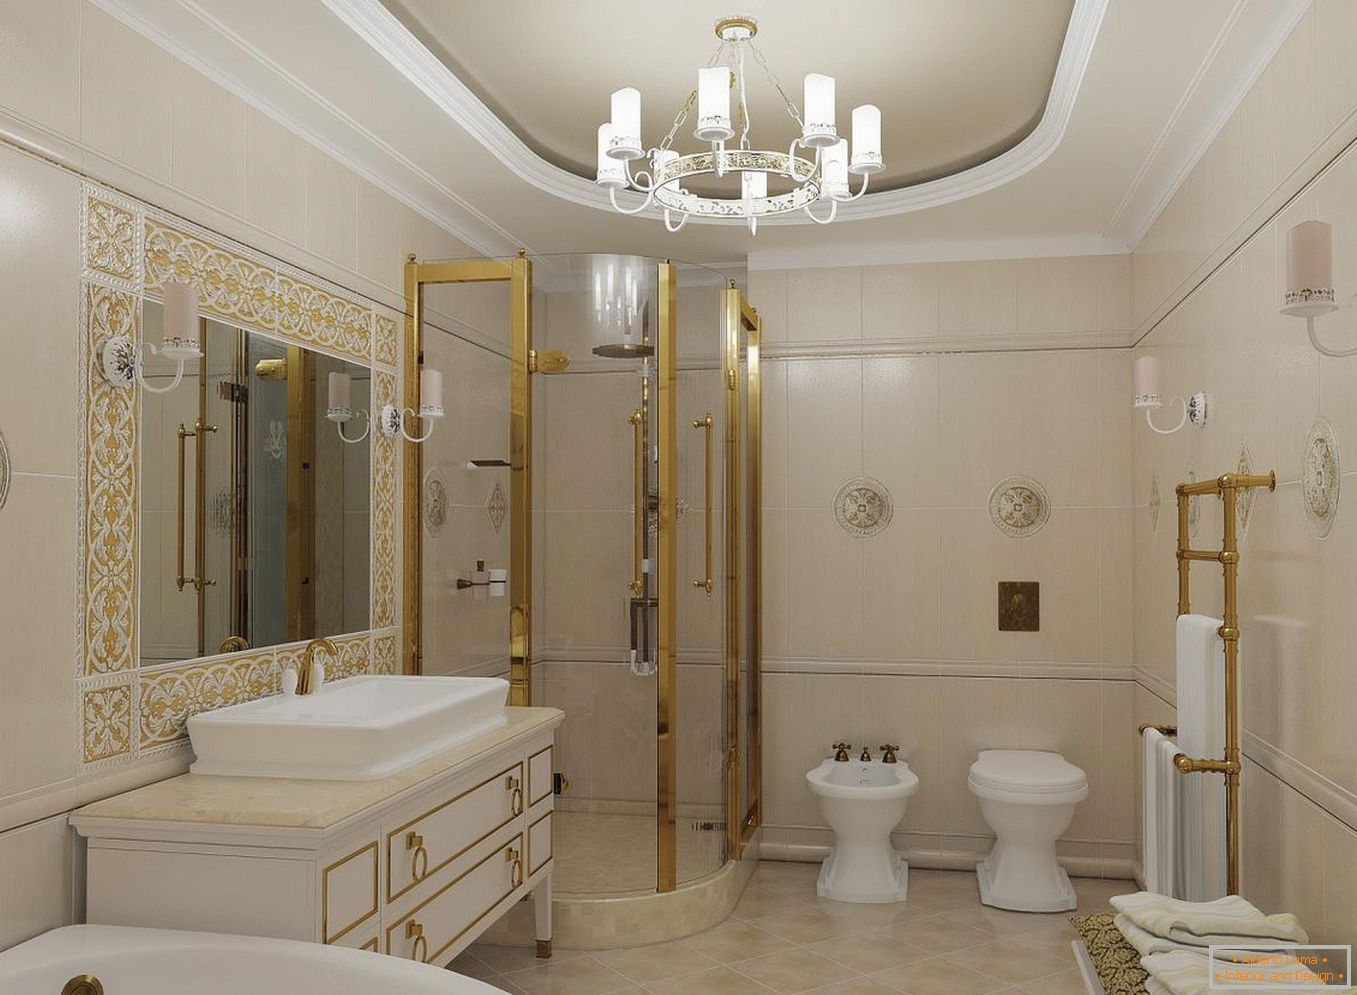 Cabina de ducha в ванной в классическом стиле